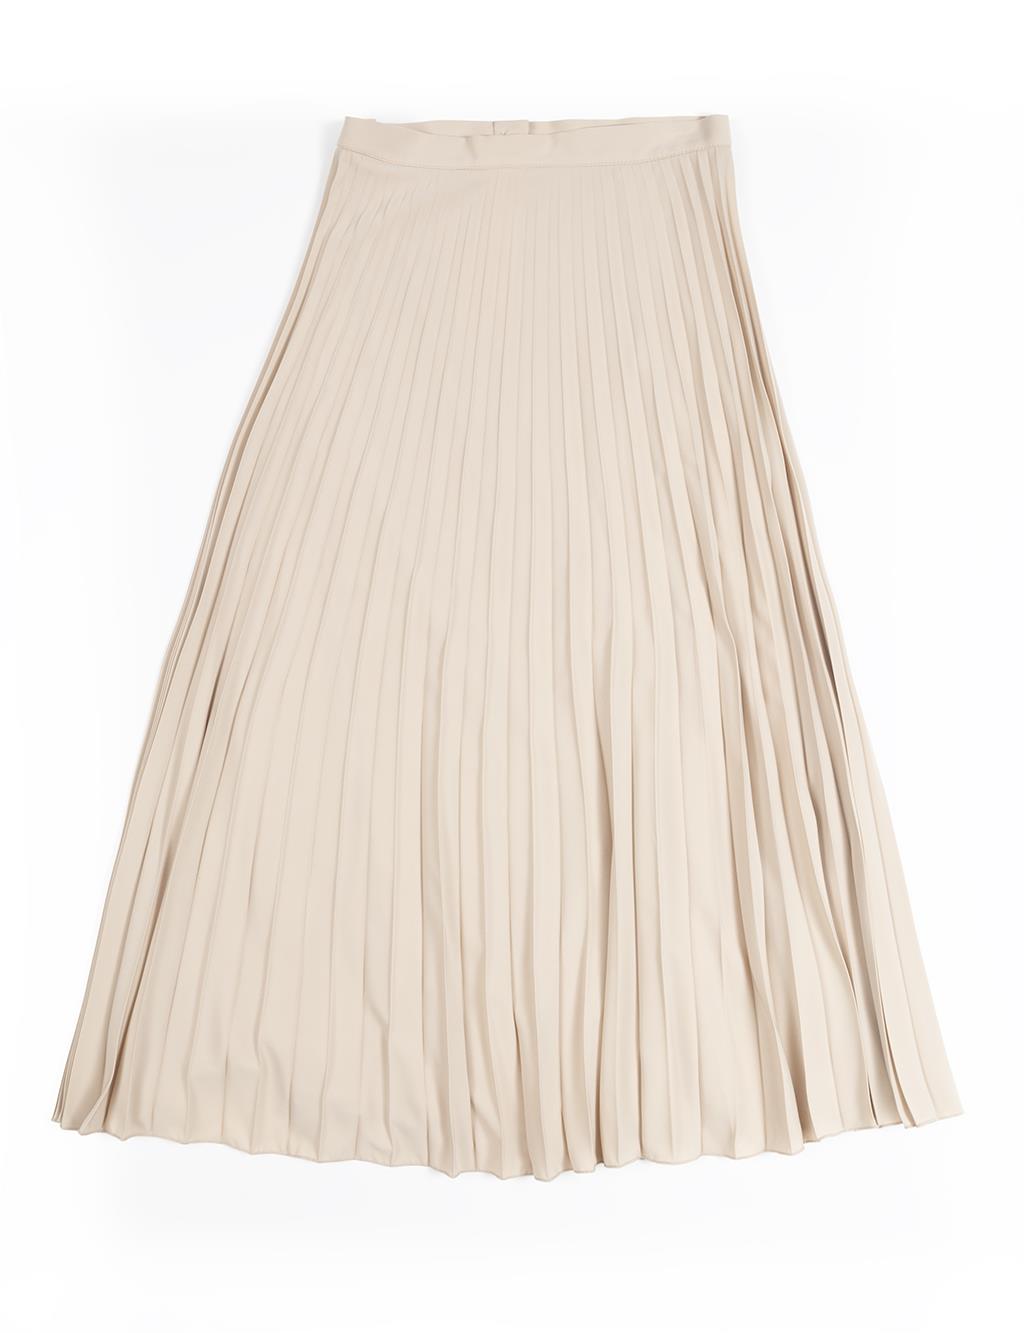 Плиссированная юбка на пуговицах цвета бежевого песка Kayra комплект рубашка и шорты comfortlee sand beige l мл